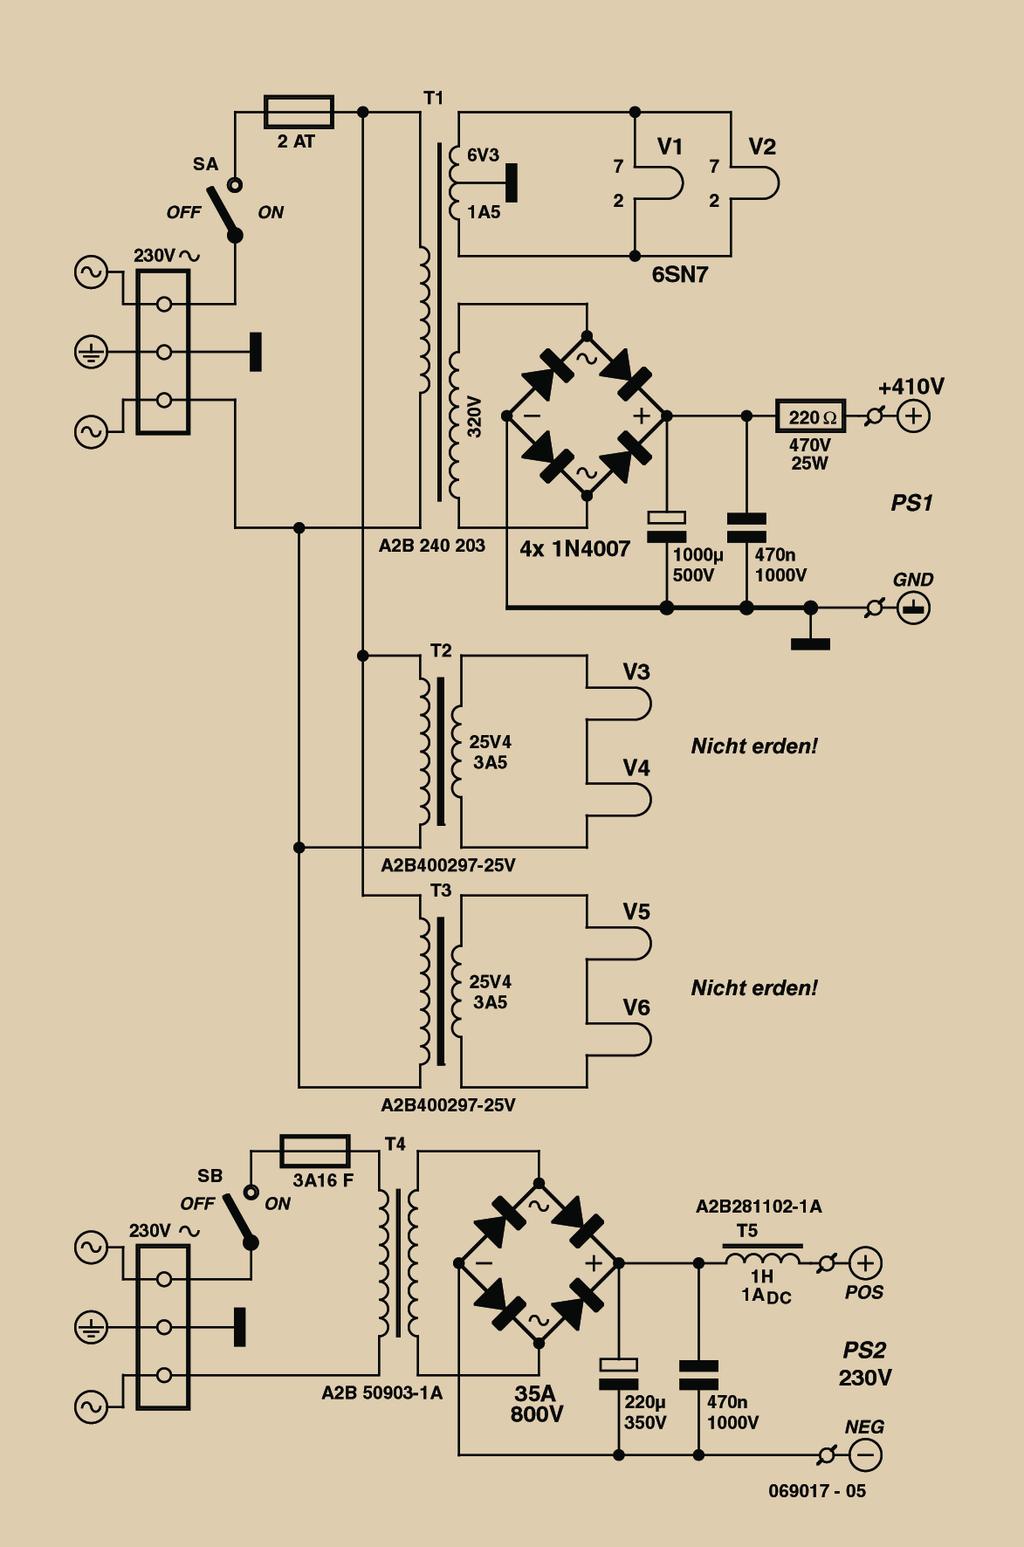 Bild 4: Audioteil des Duplex mit einfachem Double-Ended-Ausgangstrafo. fungsfaktor.